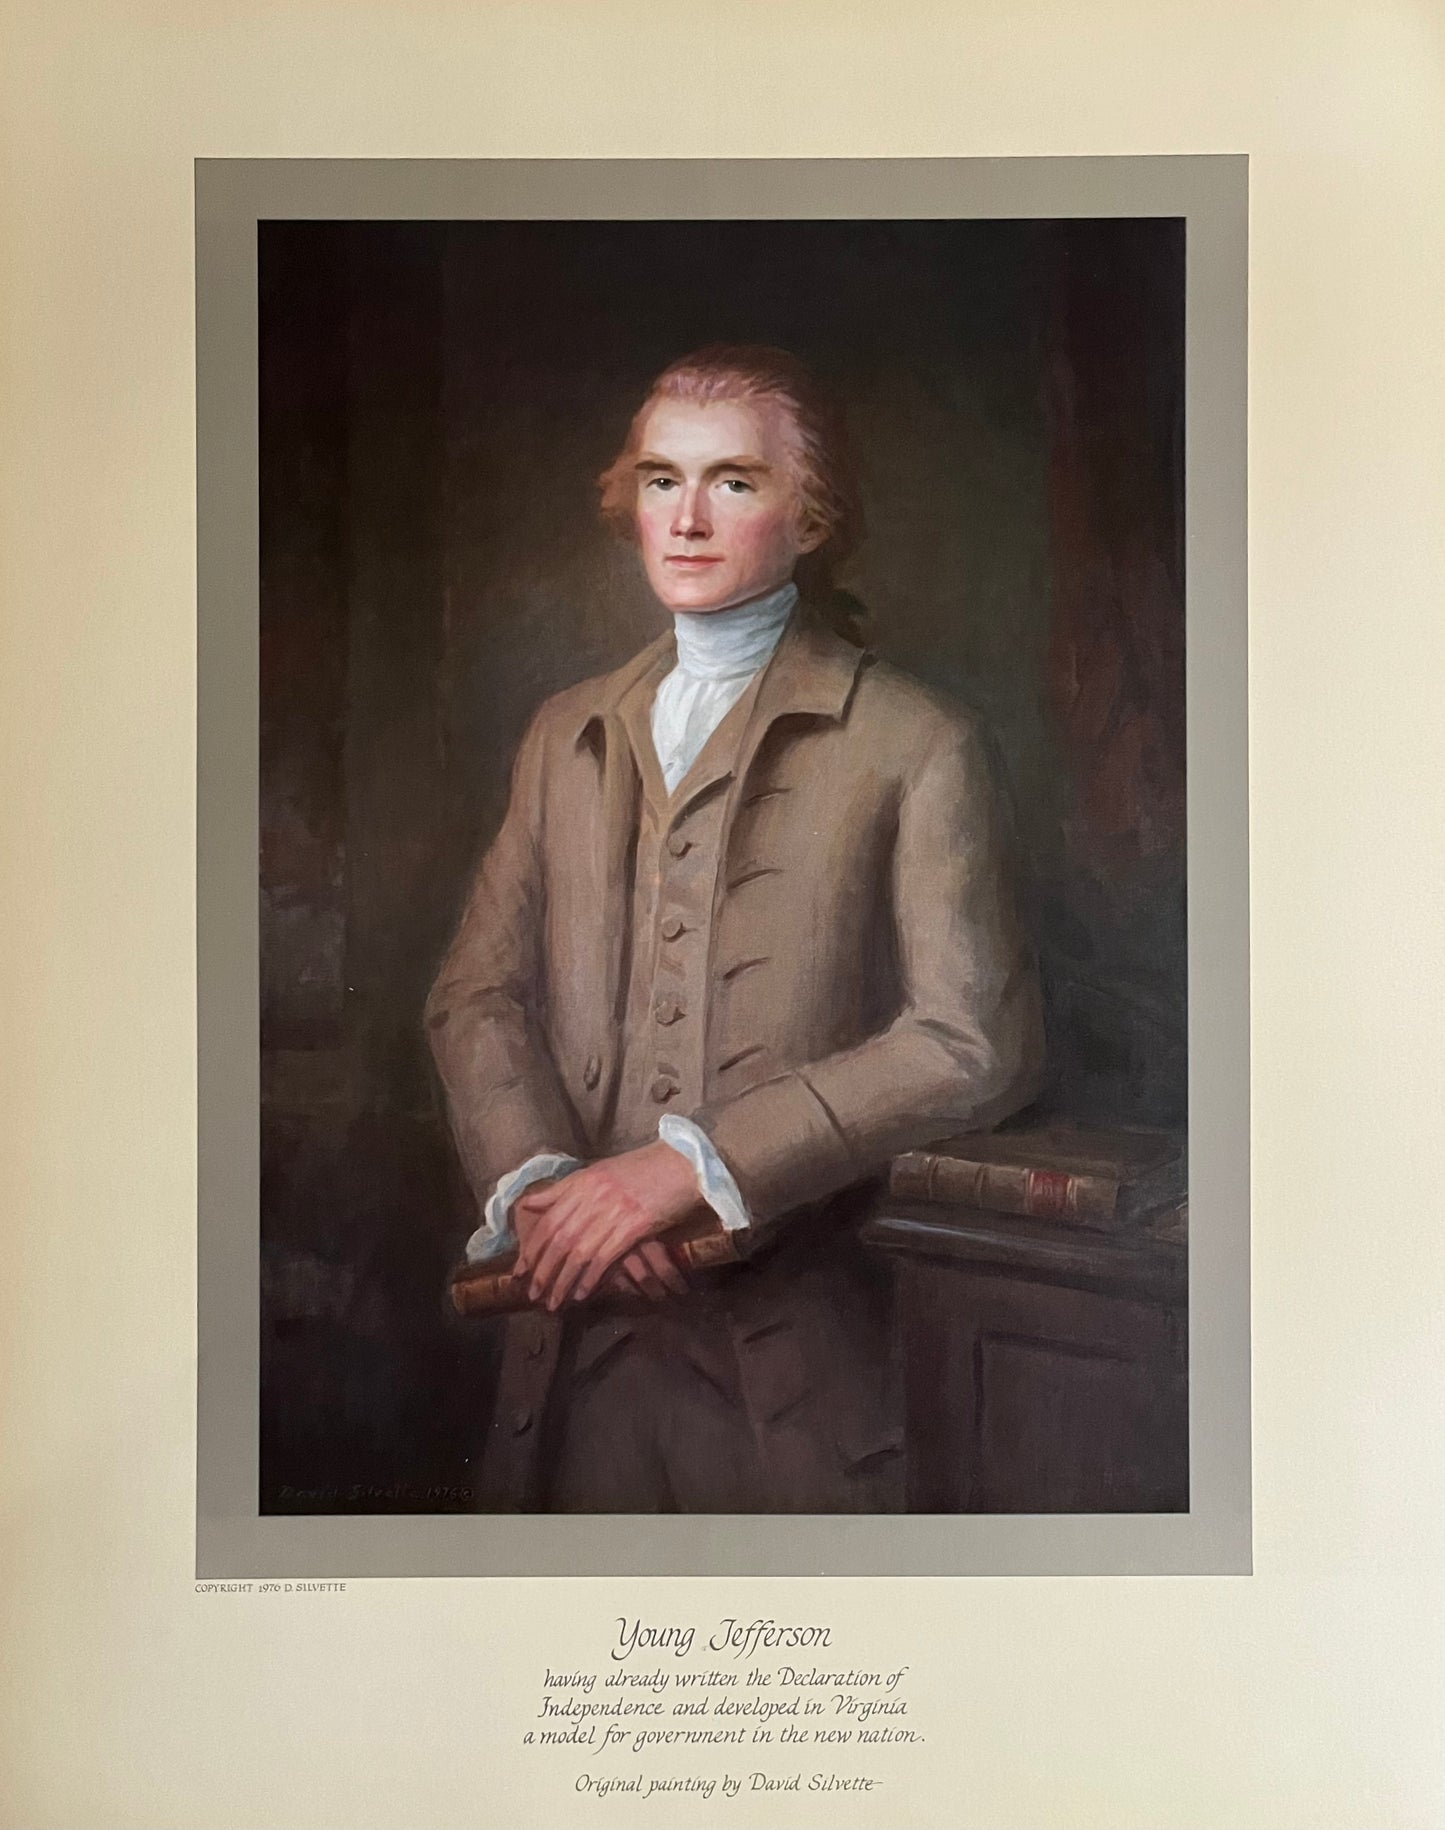 "Young Jefferson" Art Print by David Silvette